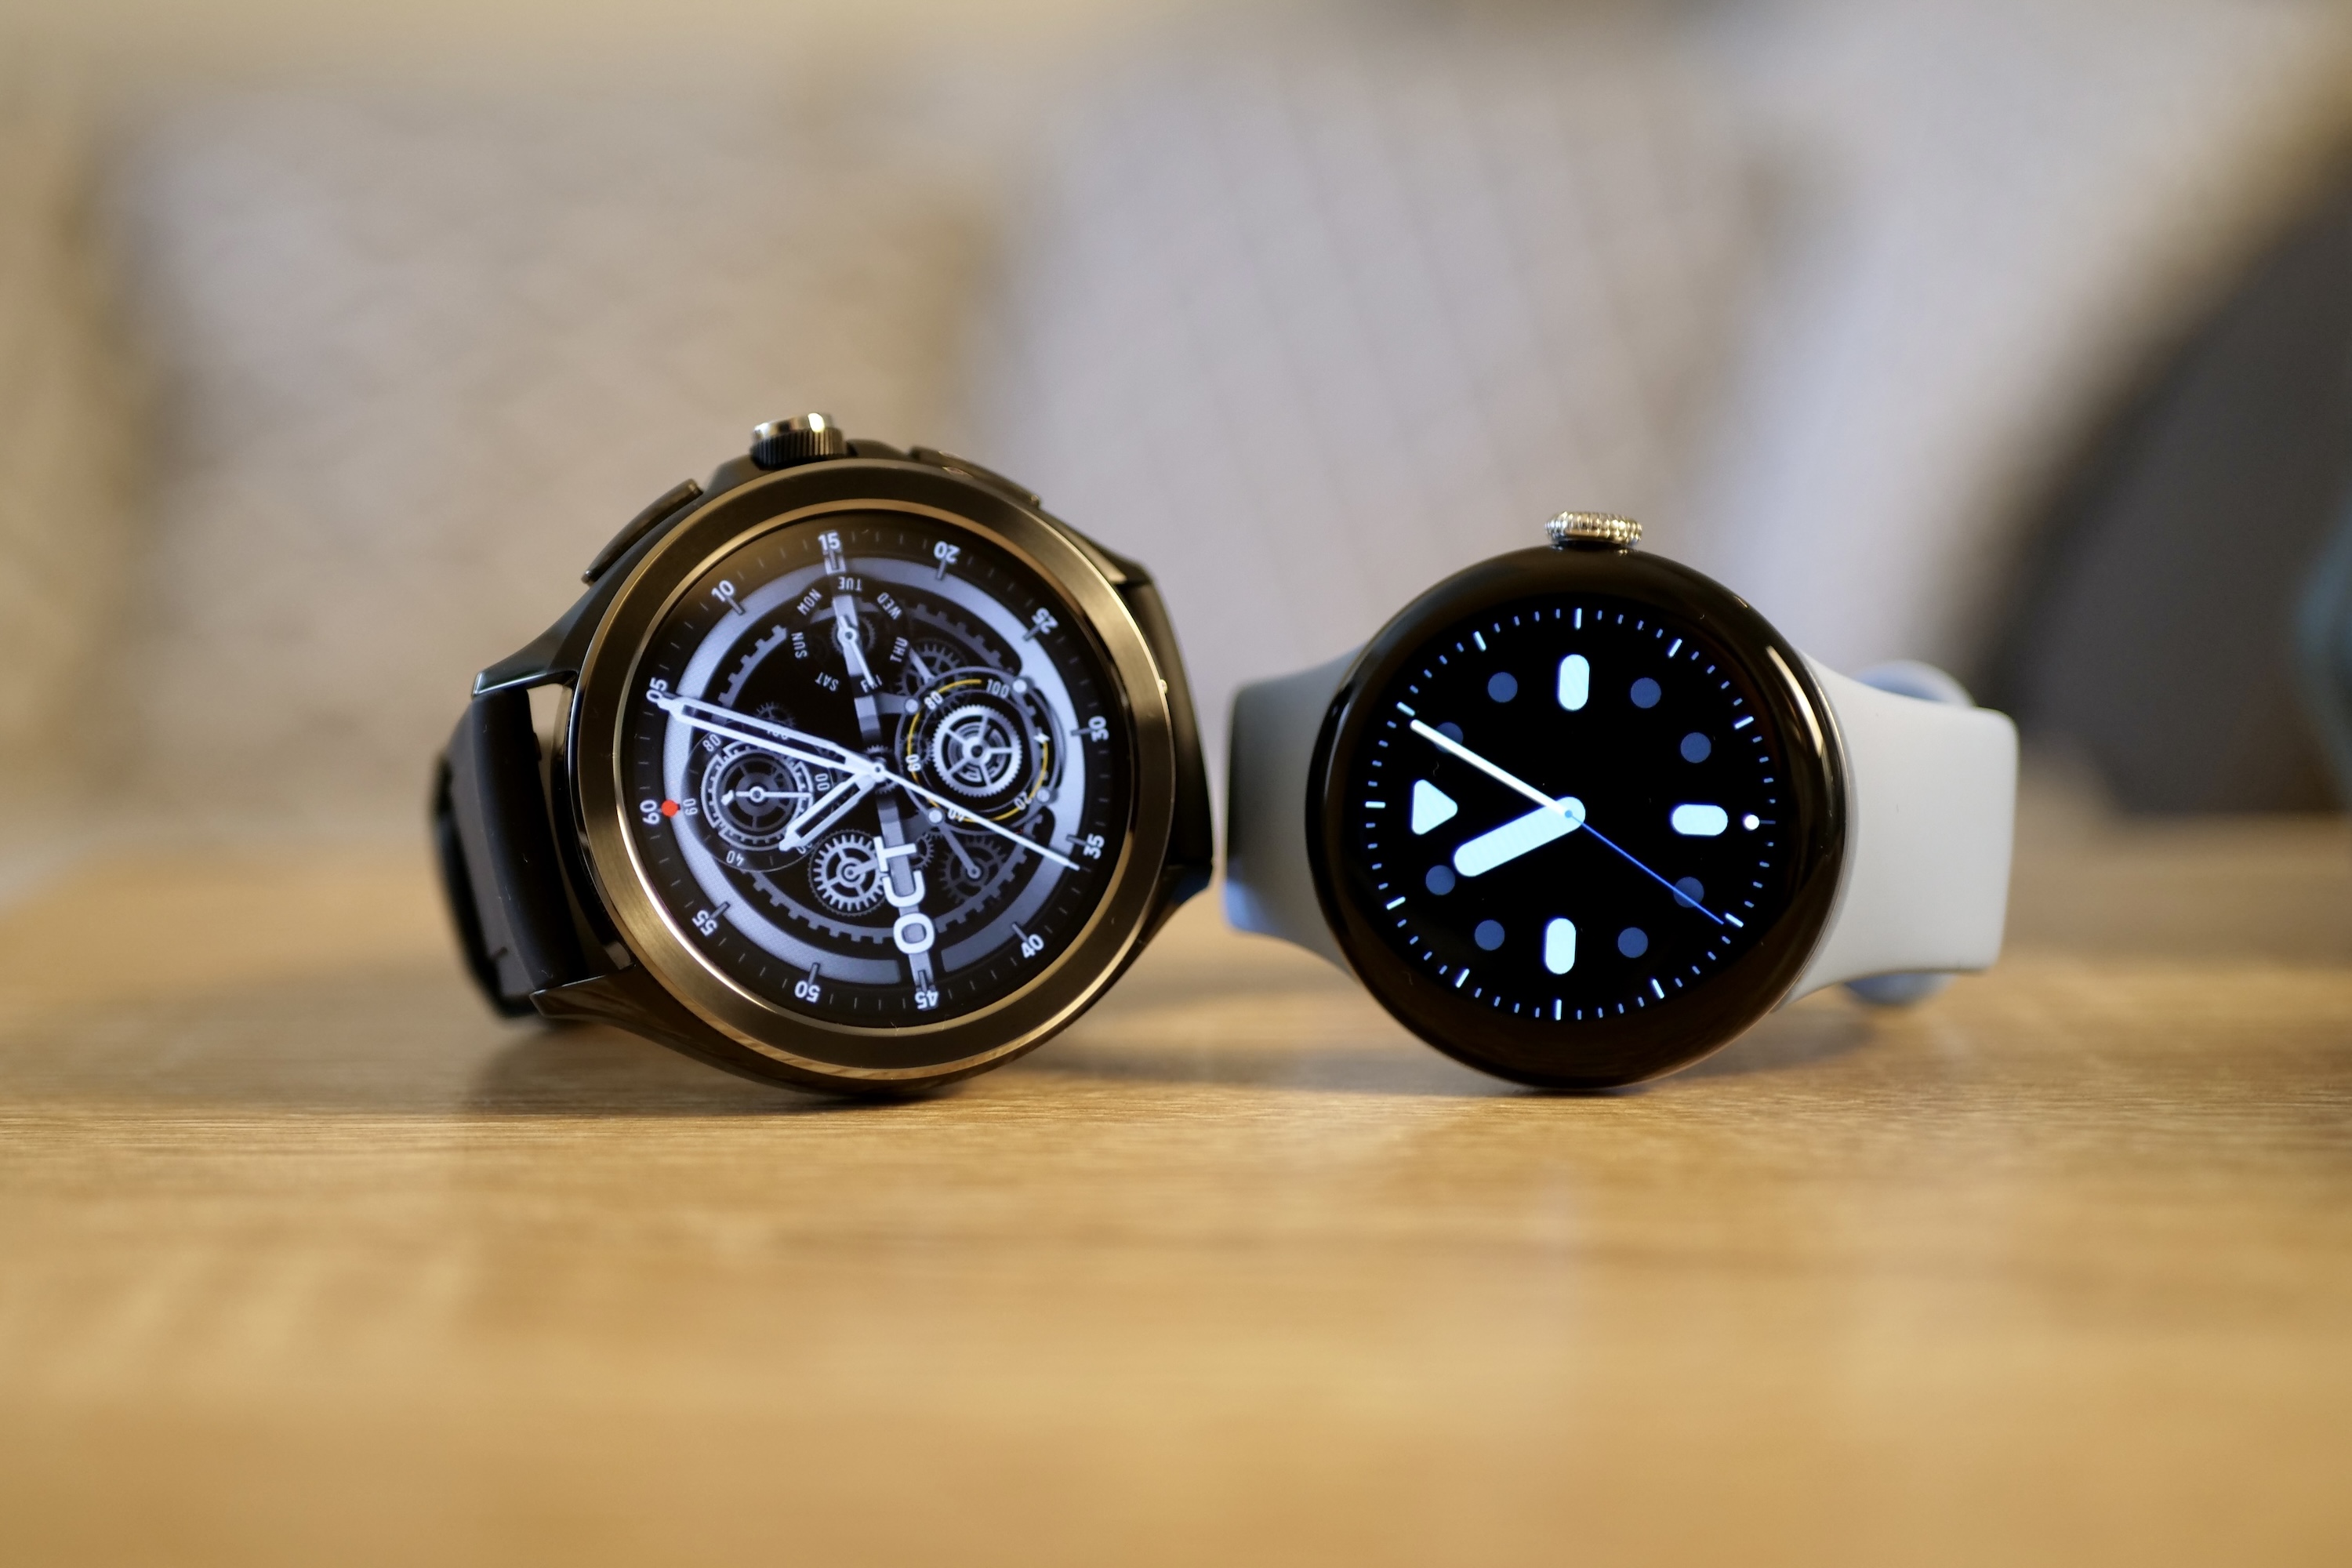 Xiaomi Watch 2 Pro Review